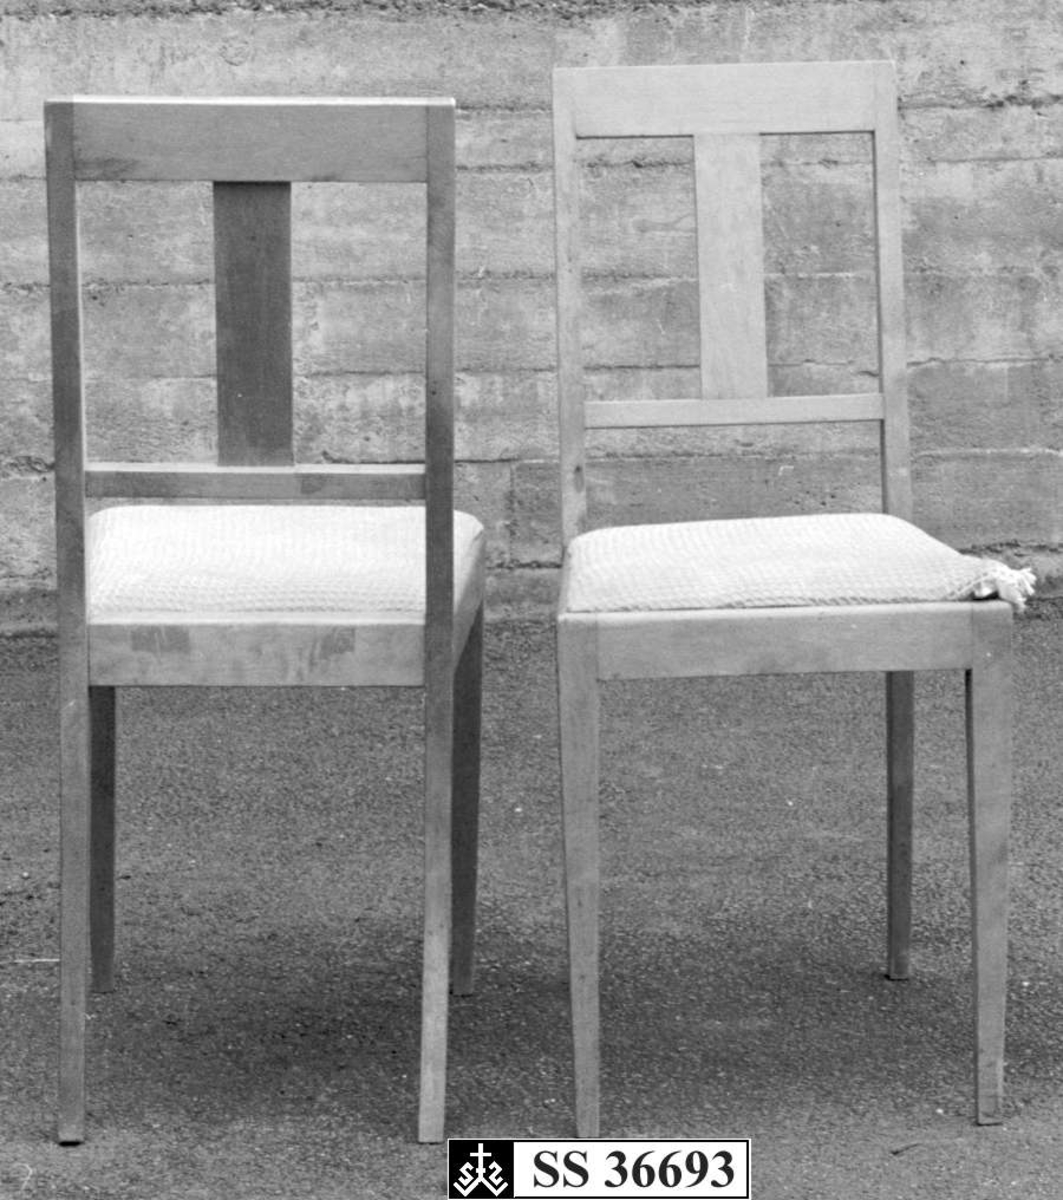 Stolen er laget av lakert bjørketre.De har rett og enkel design. Setet er trukket med rød silke- eller brokade stoff, men dette er senere dekket til med hvitt stoff.